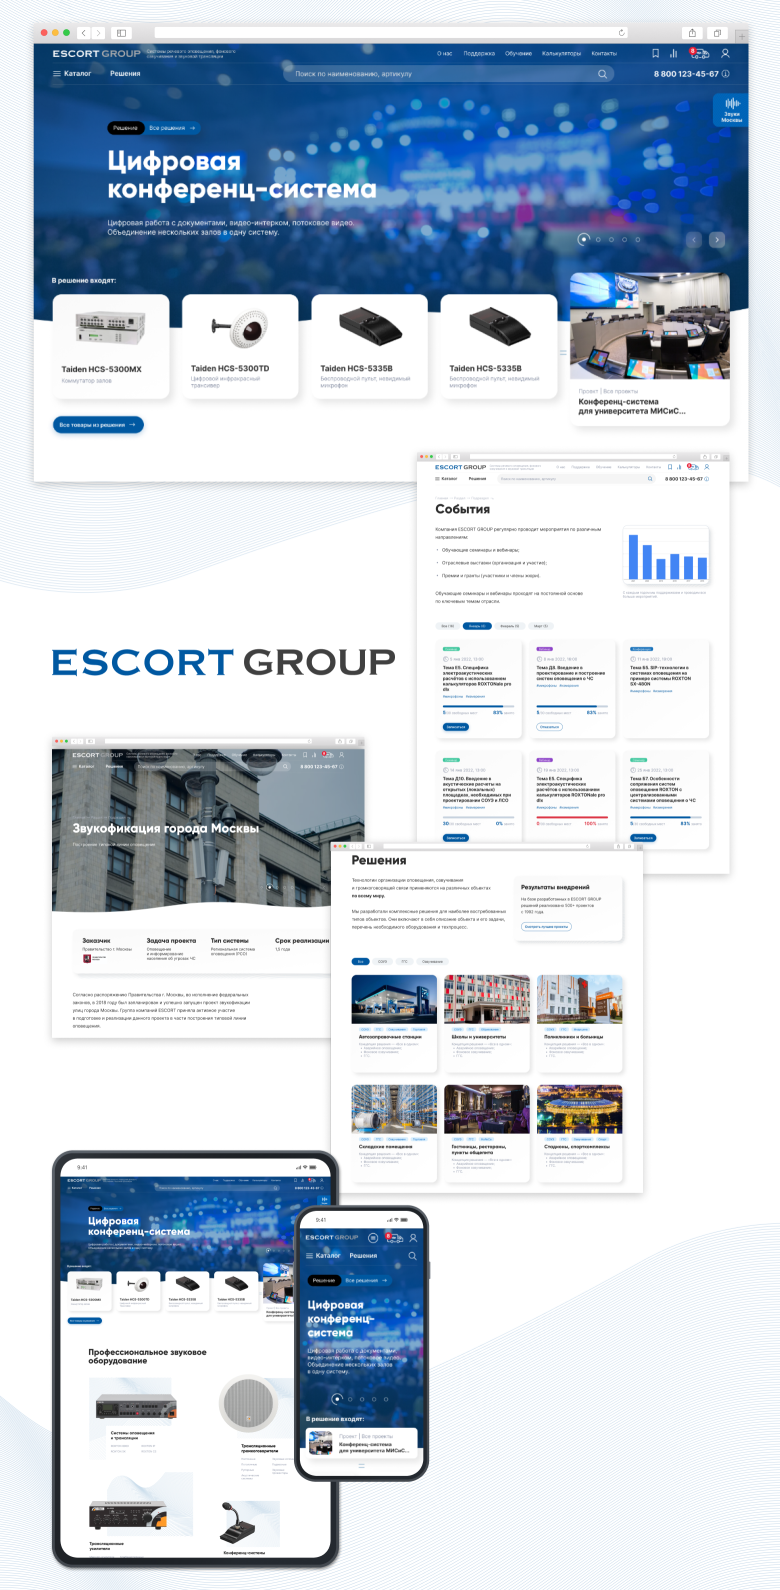 Проектирование, дизайн и верстка каталога компании Escort Group